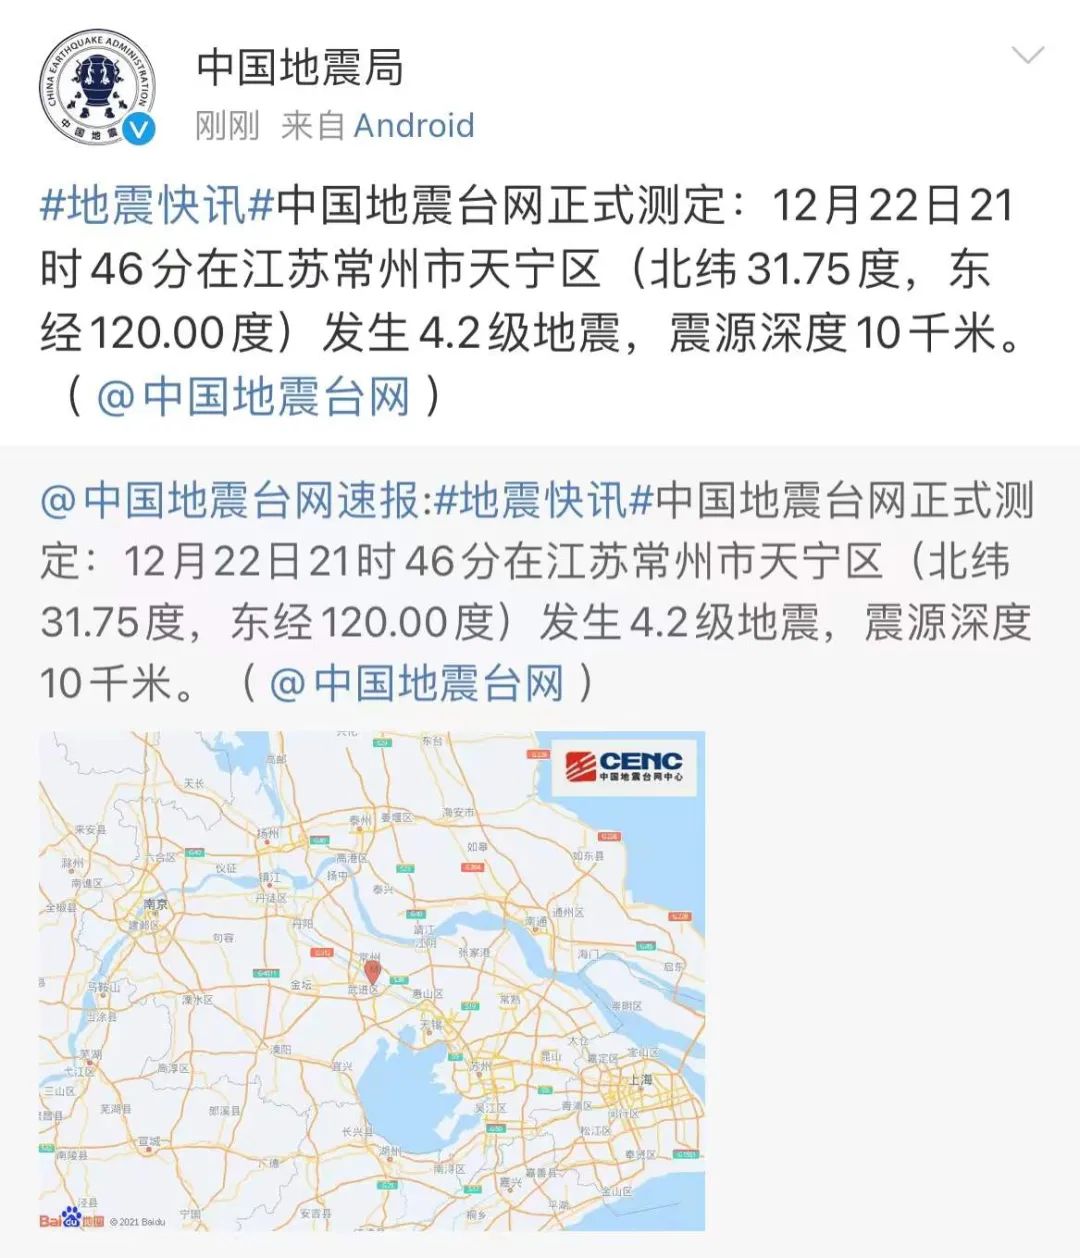 上海青浦區發生3.1級地震 市民凌晨夢中驚醒急走避 - 有線寬頻 i-CABLE